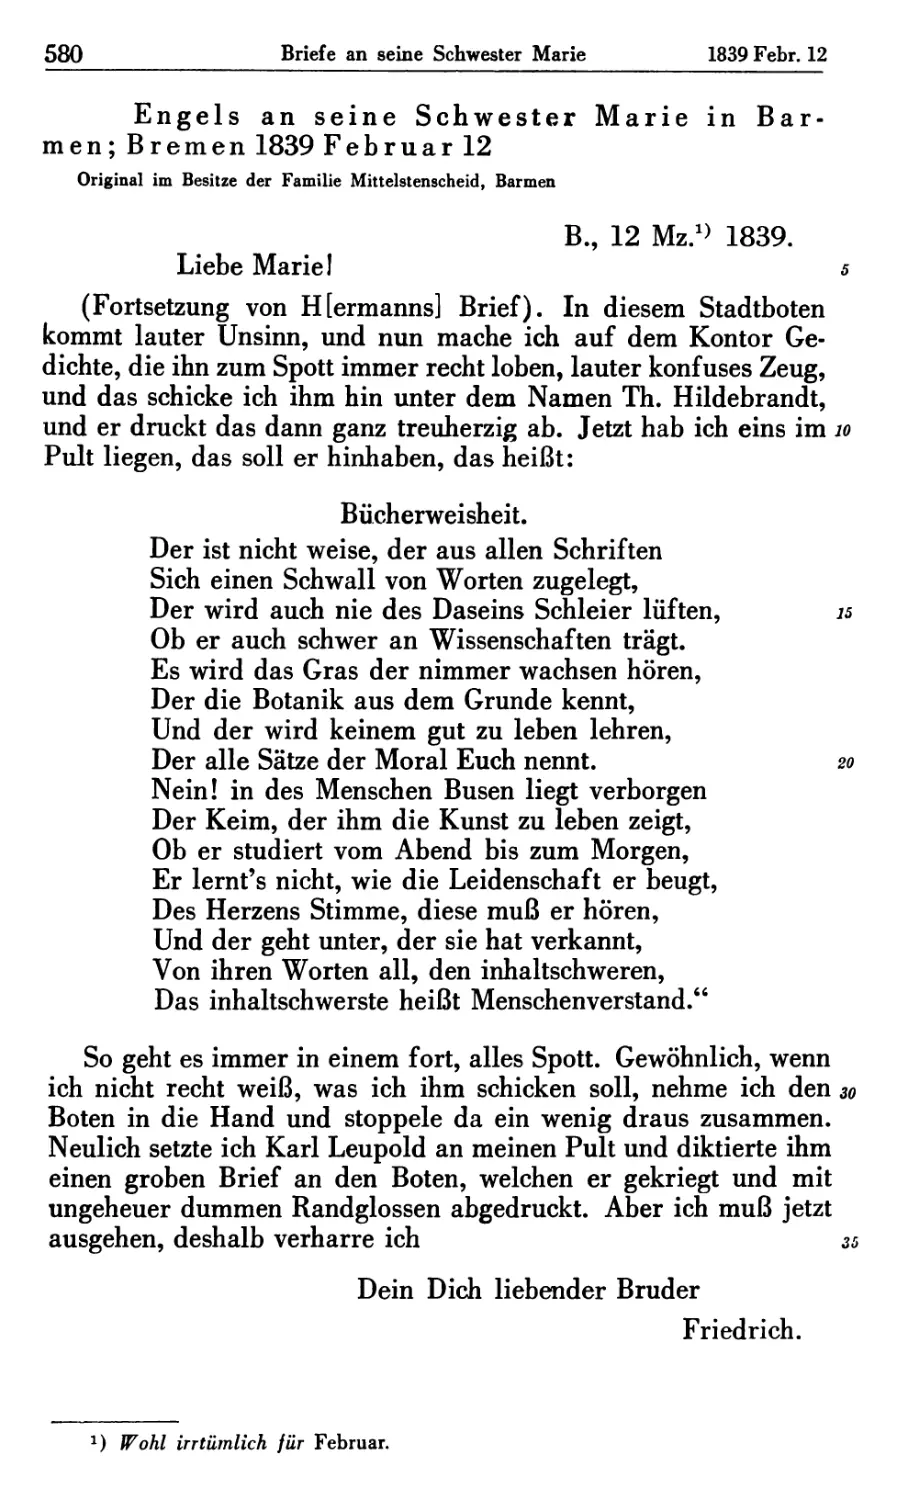 Engels an seine Schwester Marie in Barmen; Bremen 1839 Februar 12